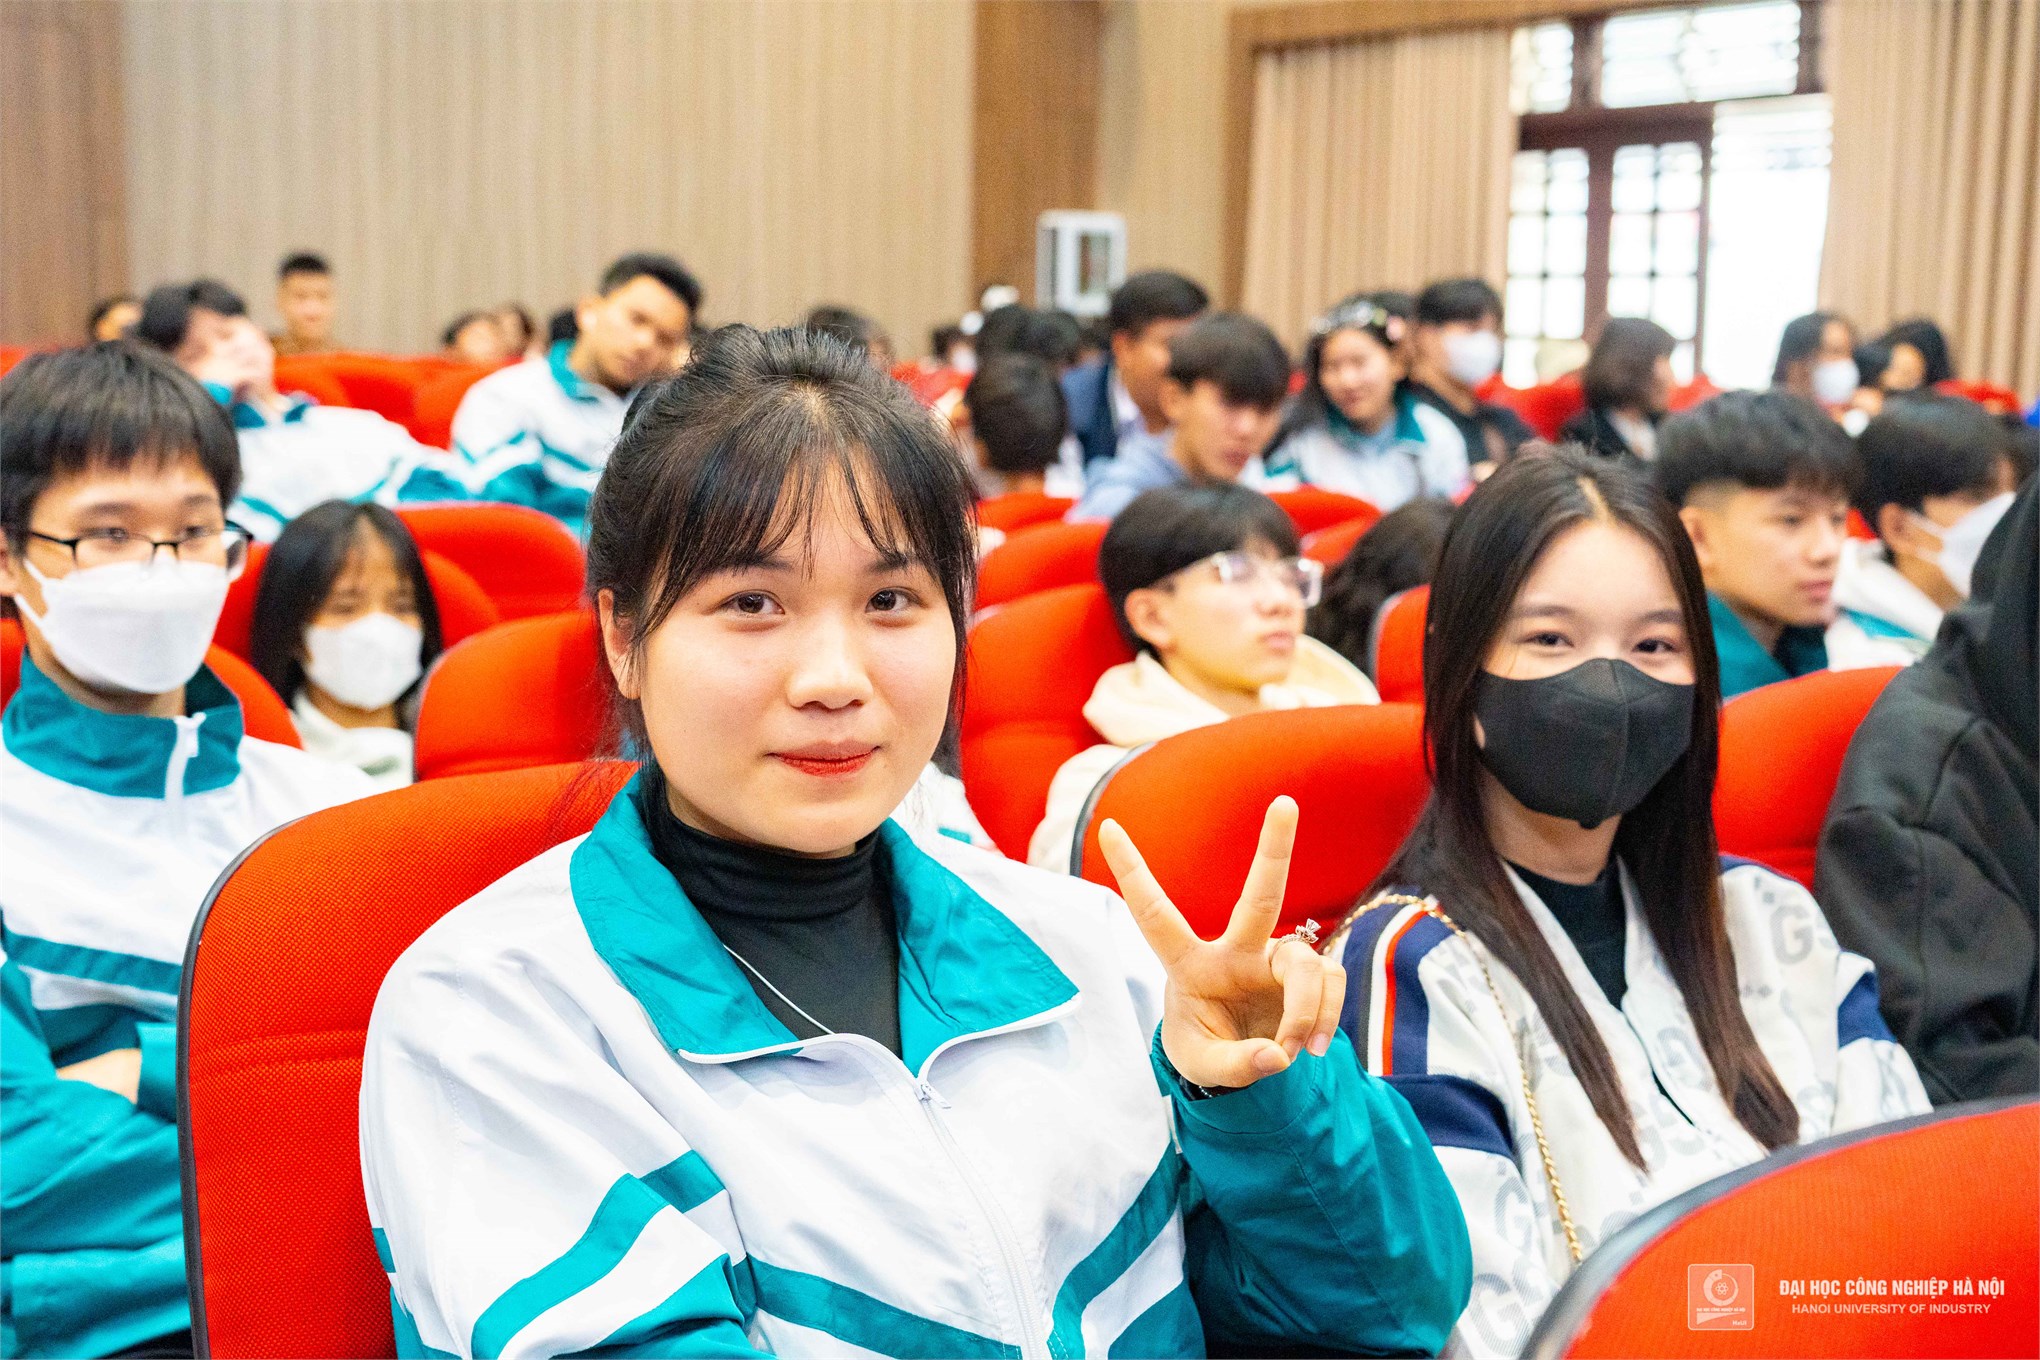 Đoàn giáo viên, phụ huynh và học sinh trường THPT Trần Nhân Tông, tỉnh Nam Định tham quan và tìm hiểu Đại học Công nghiệp Hà Nội